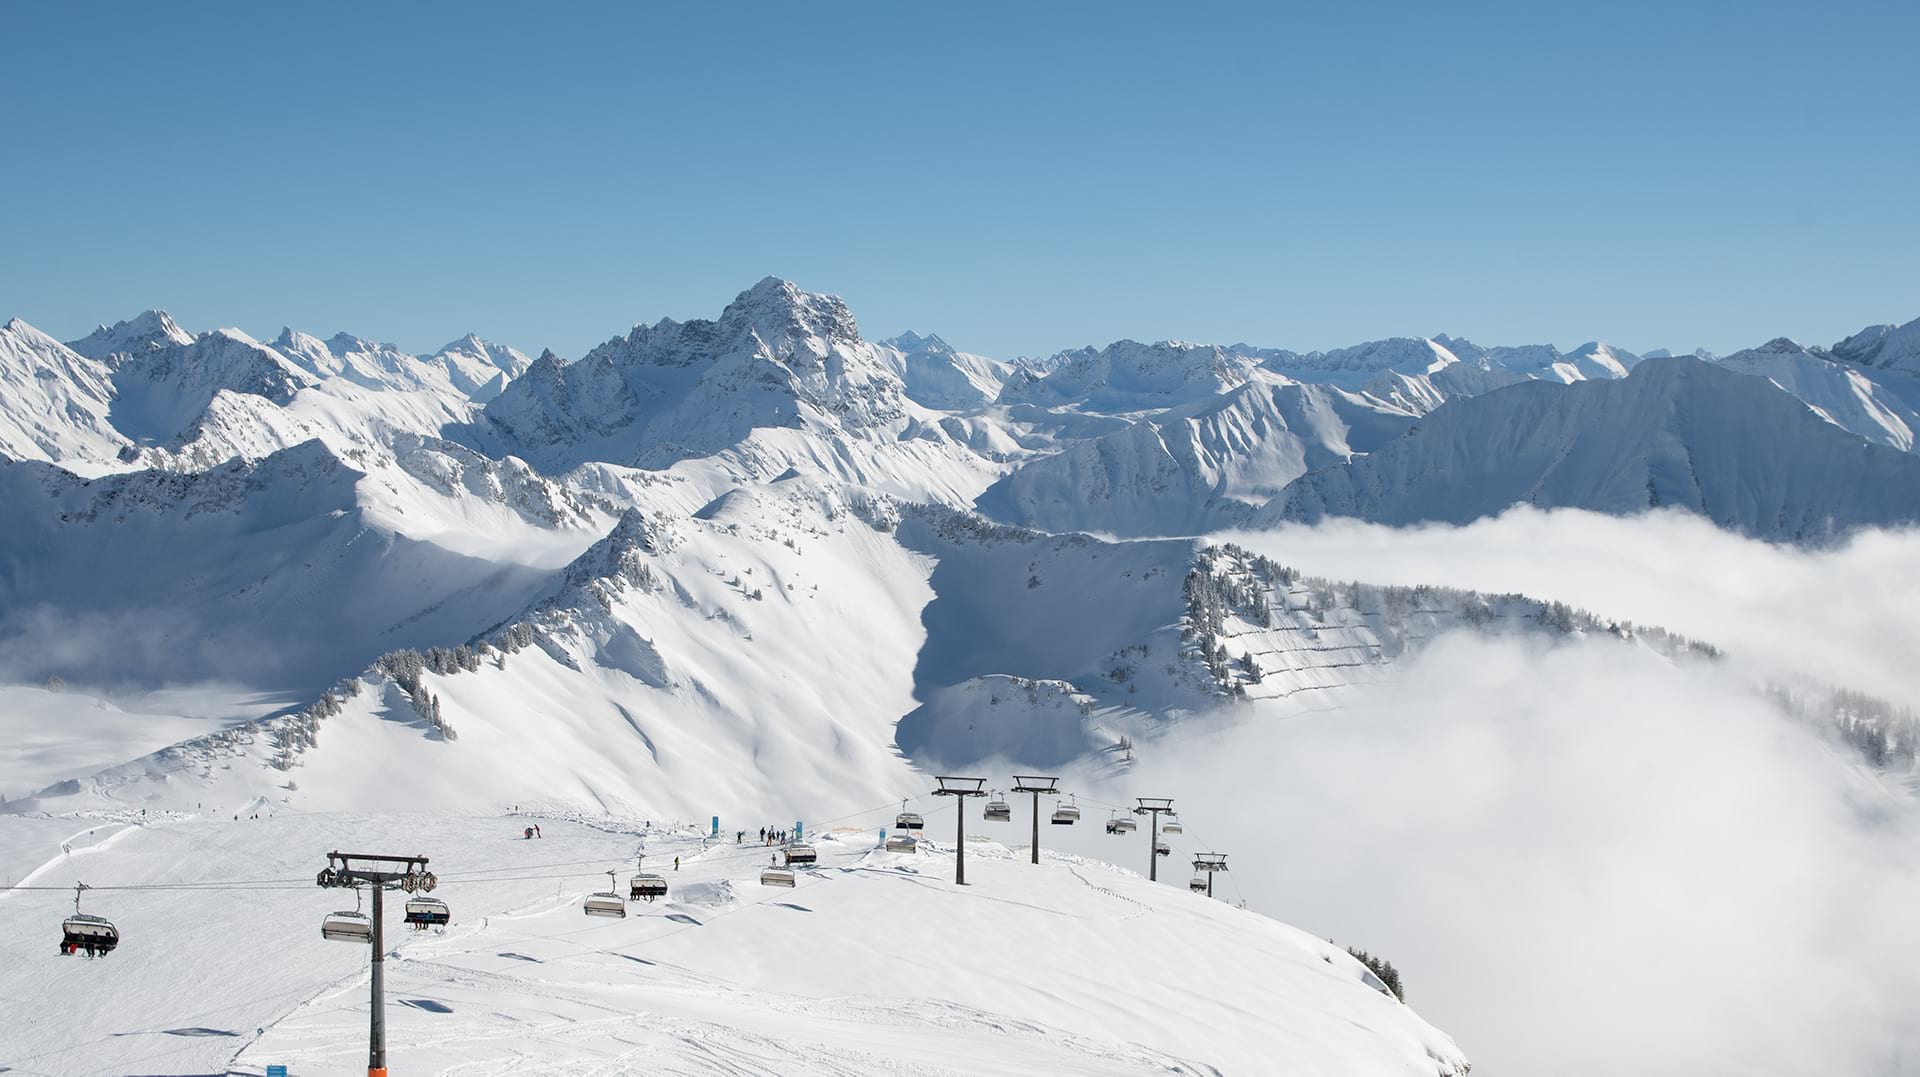 The Austrian alps on a sunny day.